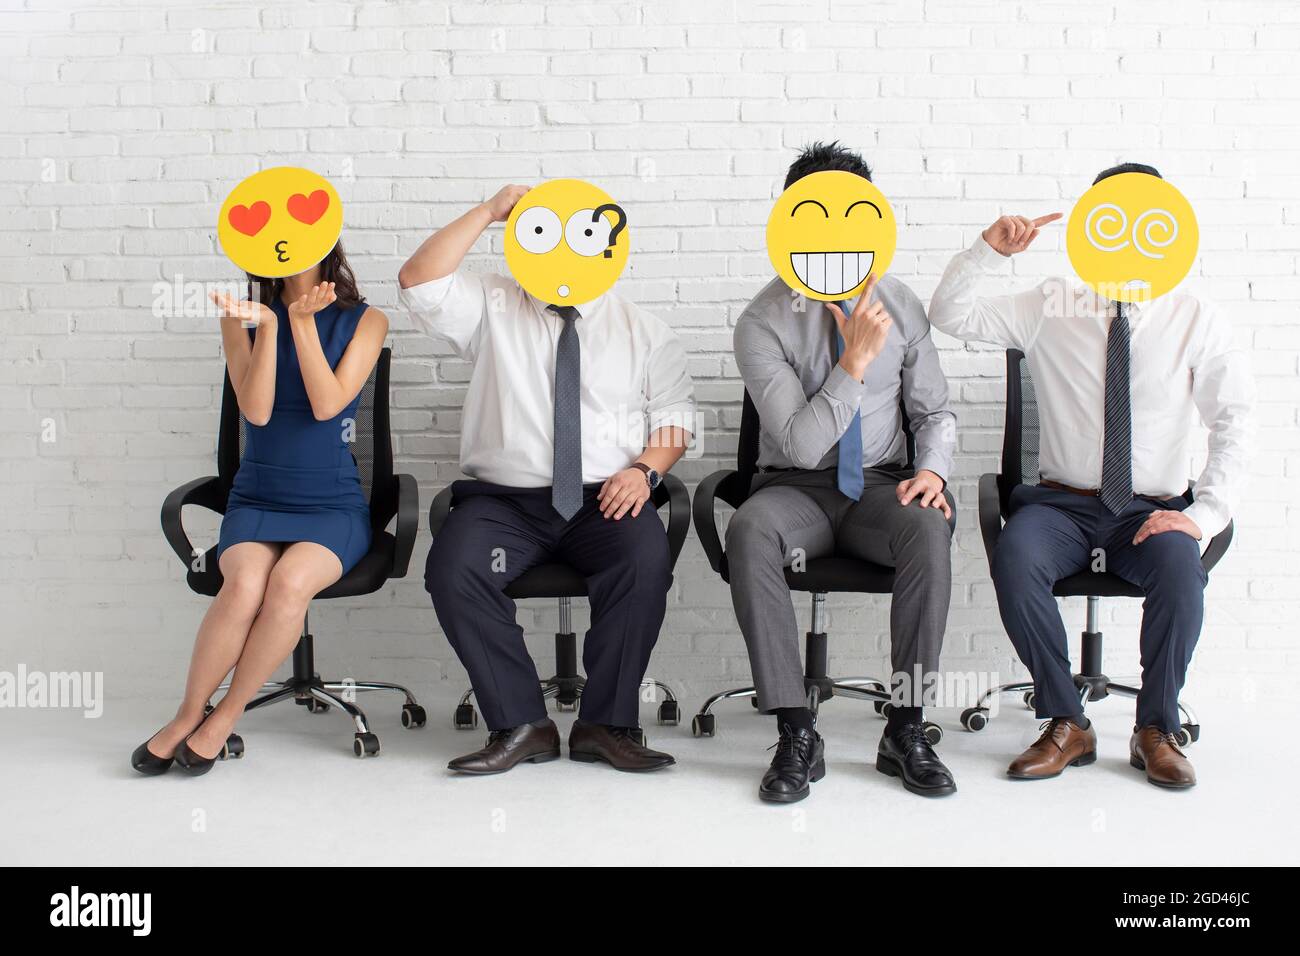 Geschäftsleute, die an einem Vorstellungsgespräch teilnehmen Stockfoto